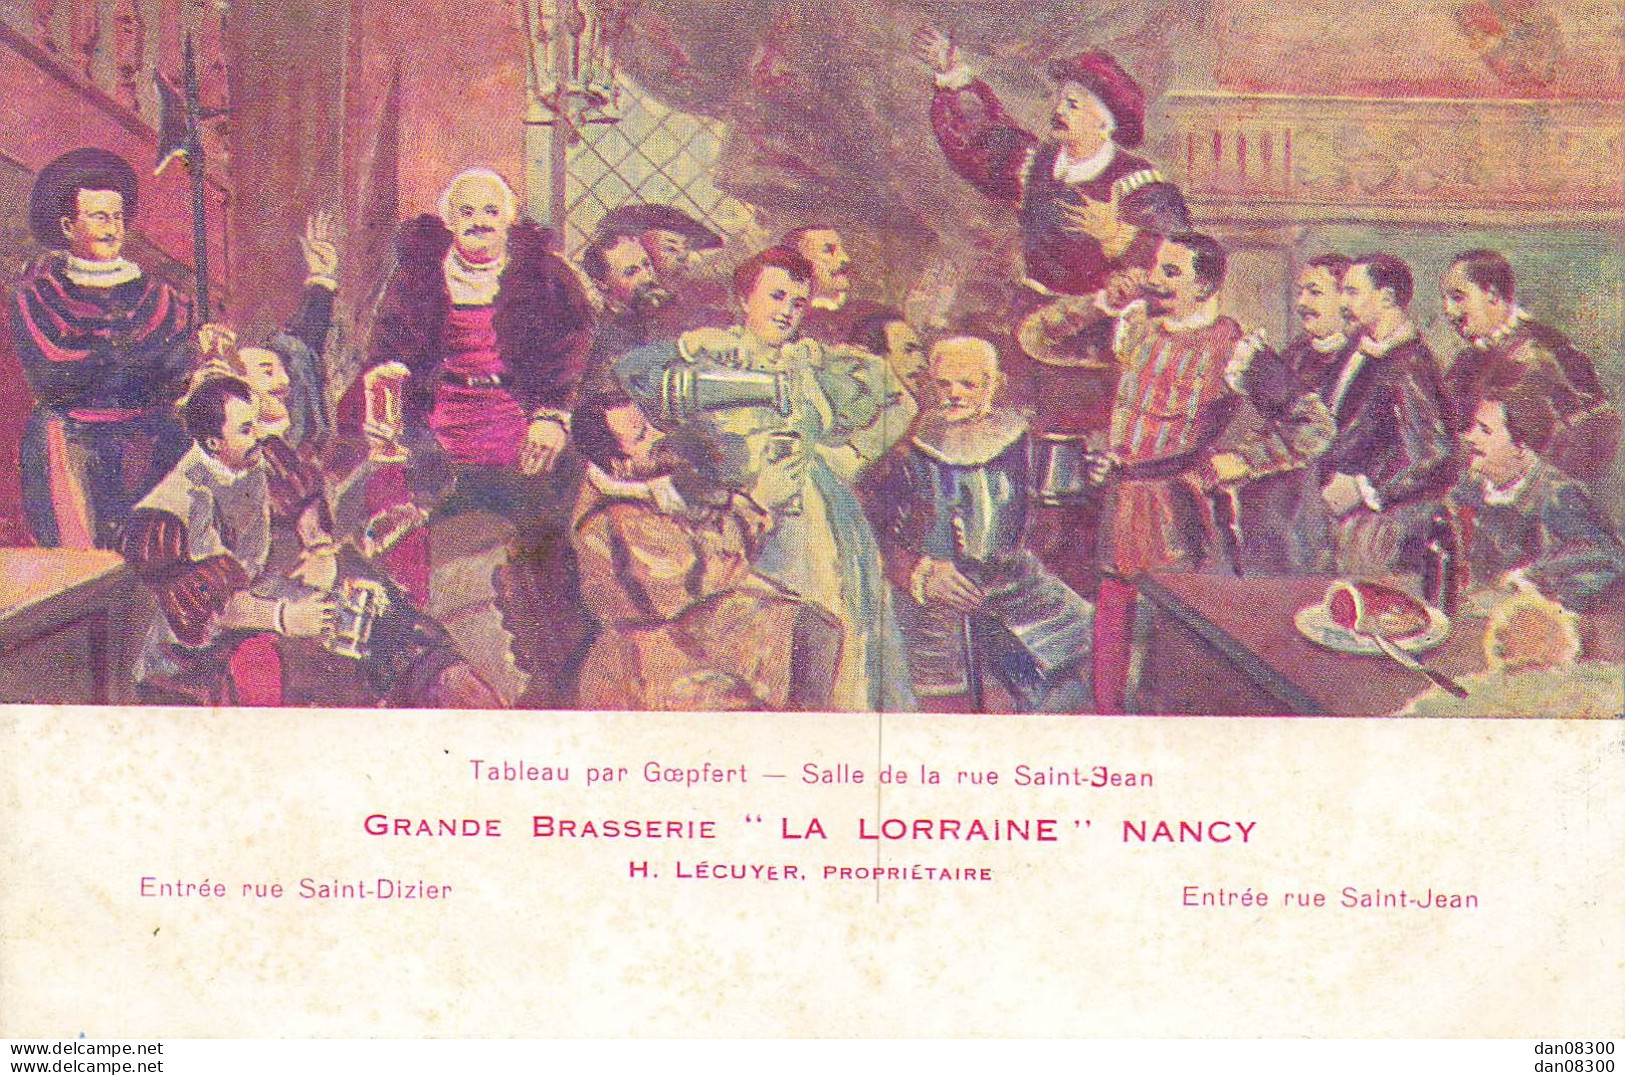 TABLEAU PAR GOEPFERT SALLE DE LA RUE SAINT JEAN GRANDE BRASSERIE LA LORRAINE NANCY - Peintures & Tableaux